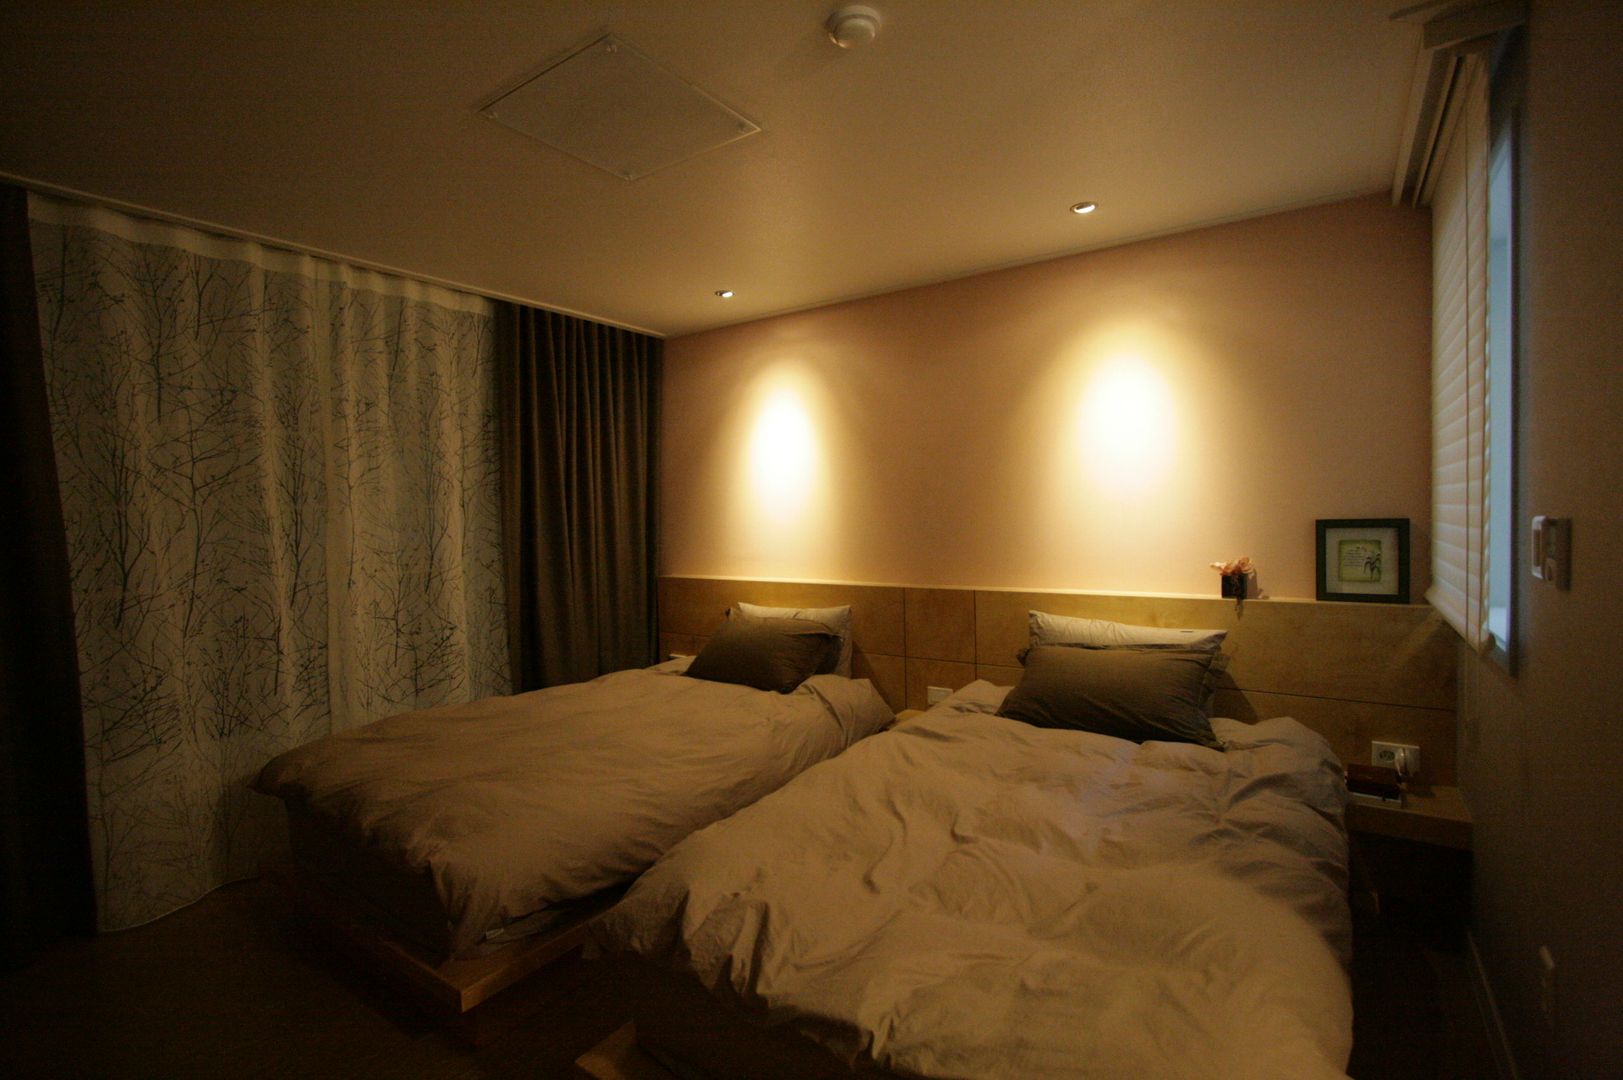 호텔식 트윈룸_34py, 홍예디자인 홍예디자인 Dormitorios modernos: Ideas, imágenes y decoración